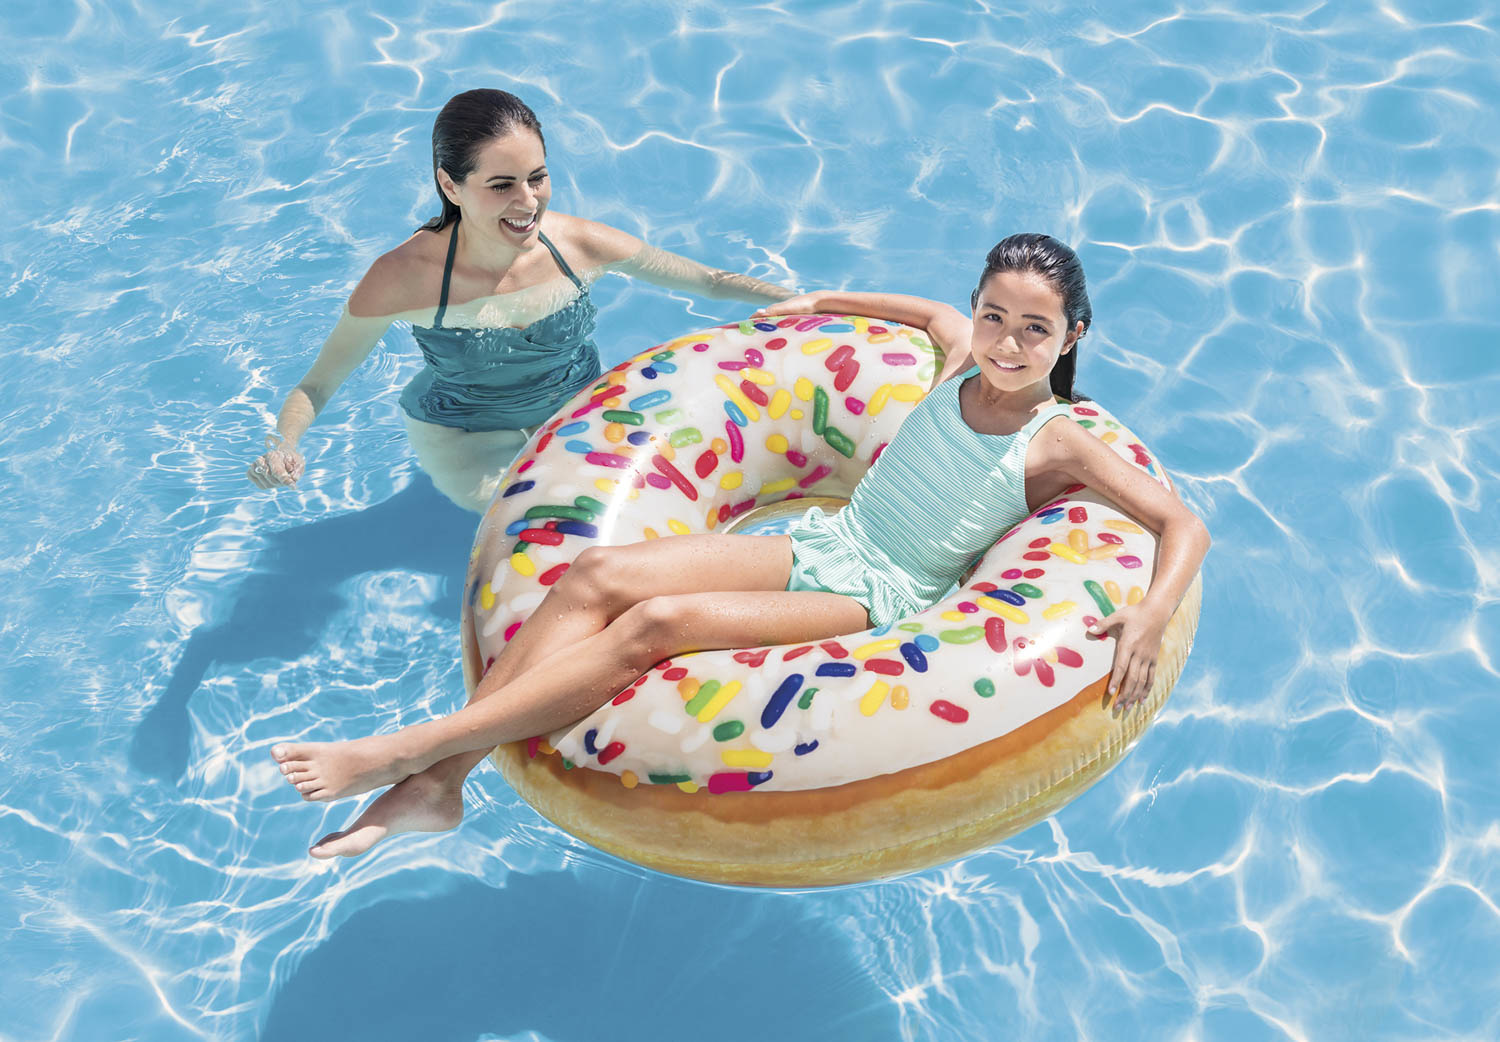 Wind opslaan tapijt Intex Zwemband - Donut Sprinkle kopen? - Tuinartikelen.nu